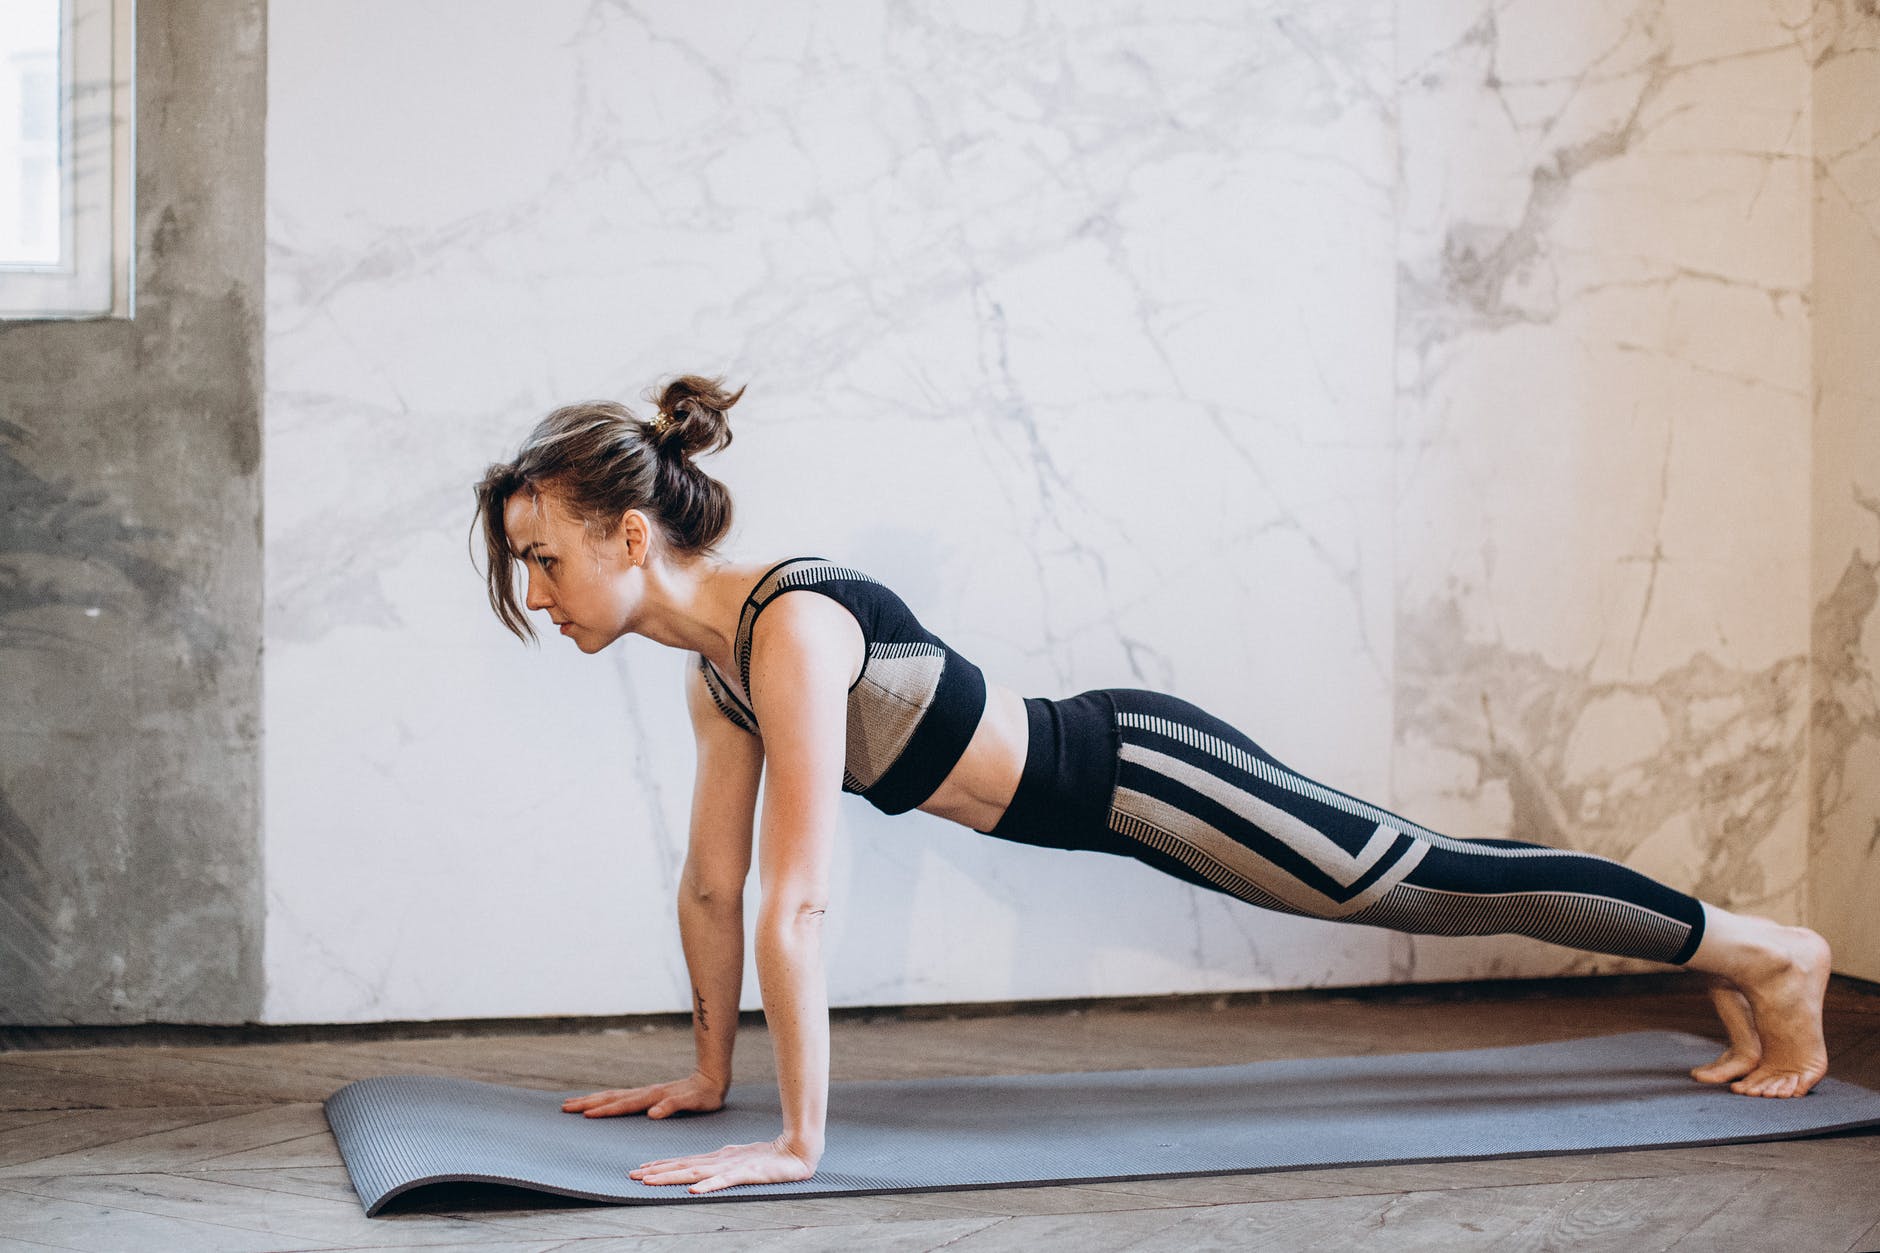 5 exercícios de pilates para fazer em casa - Notícias sobre saúde